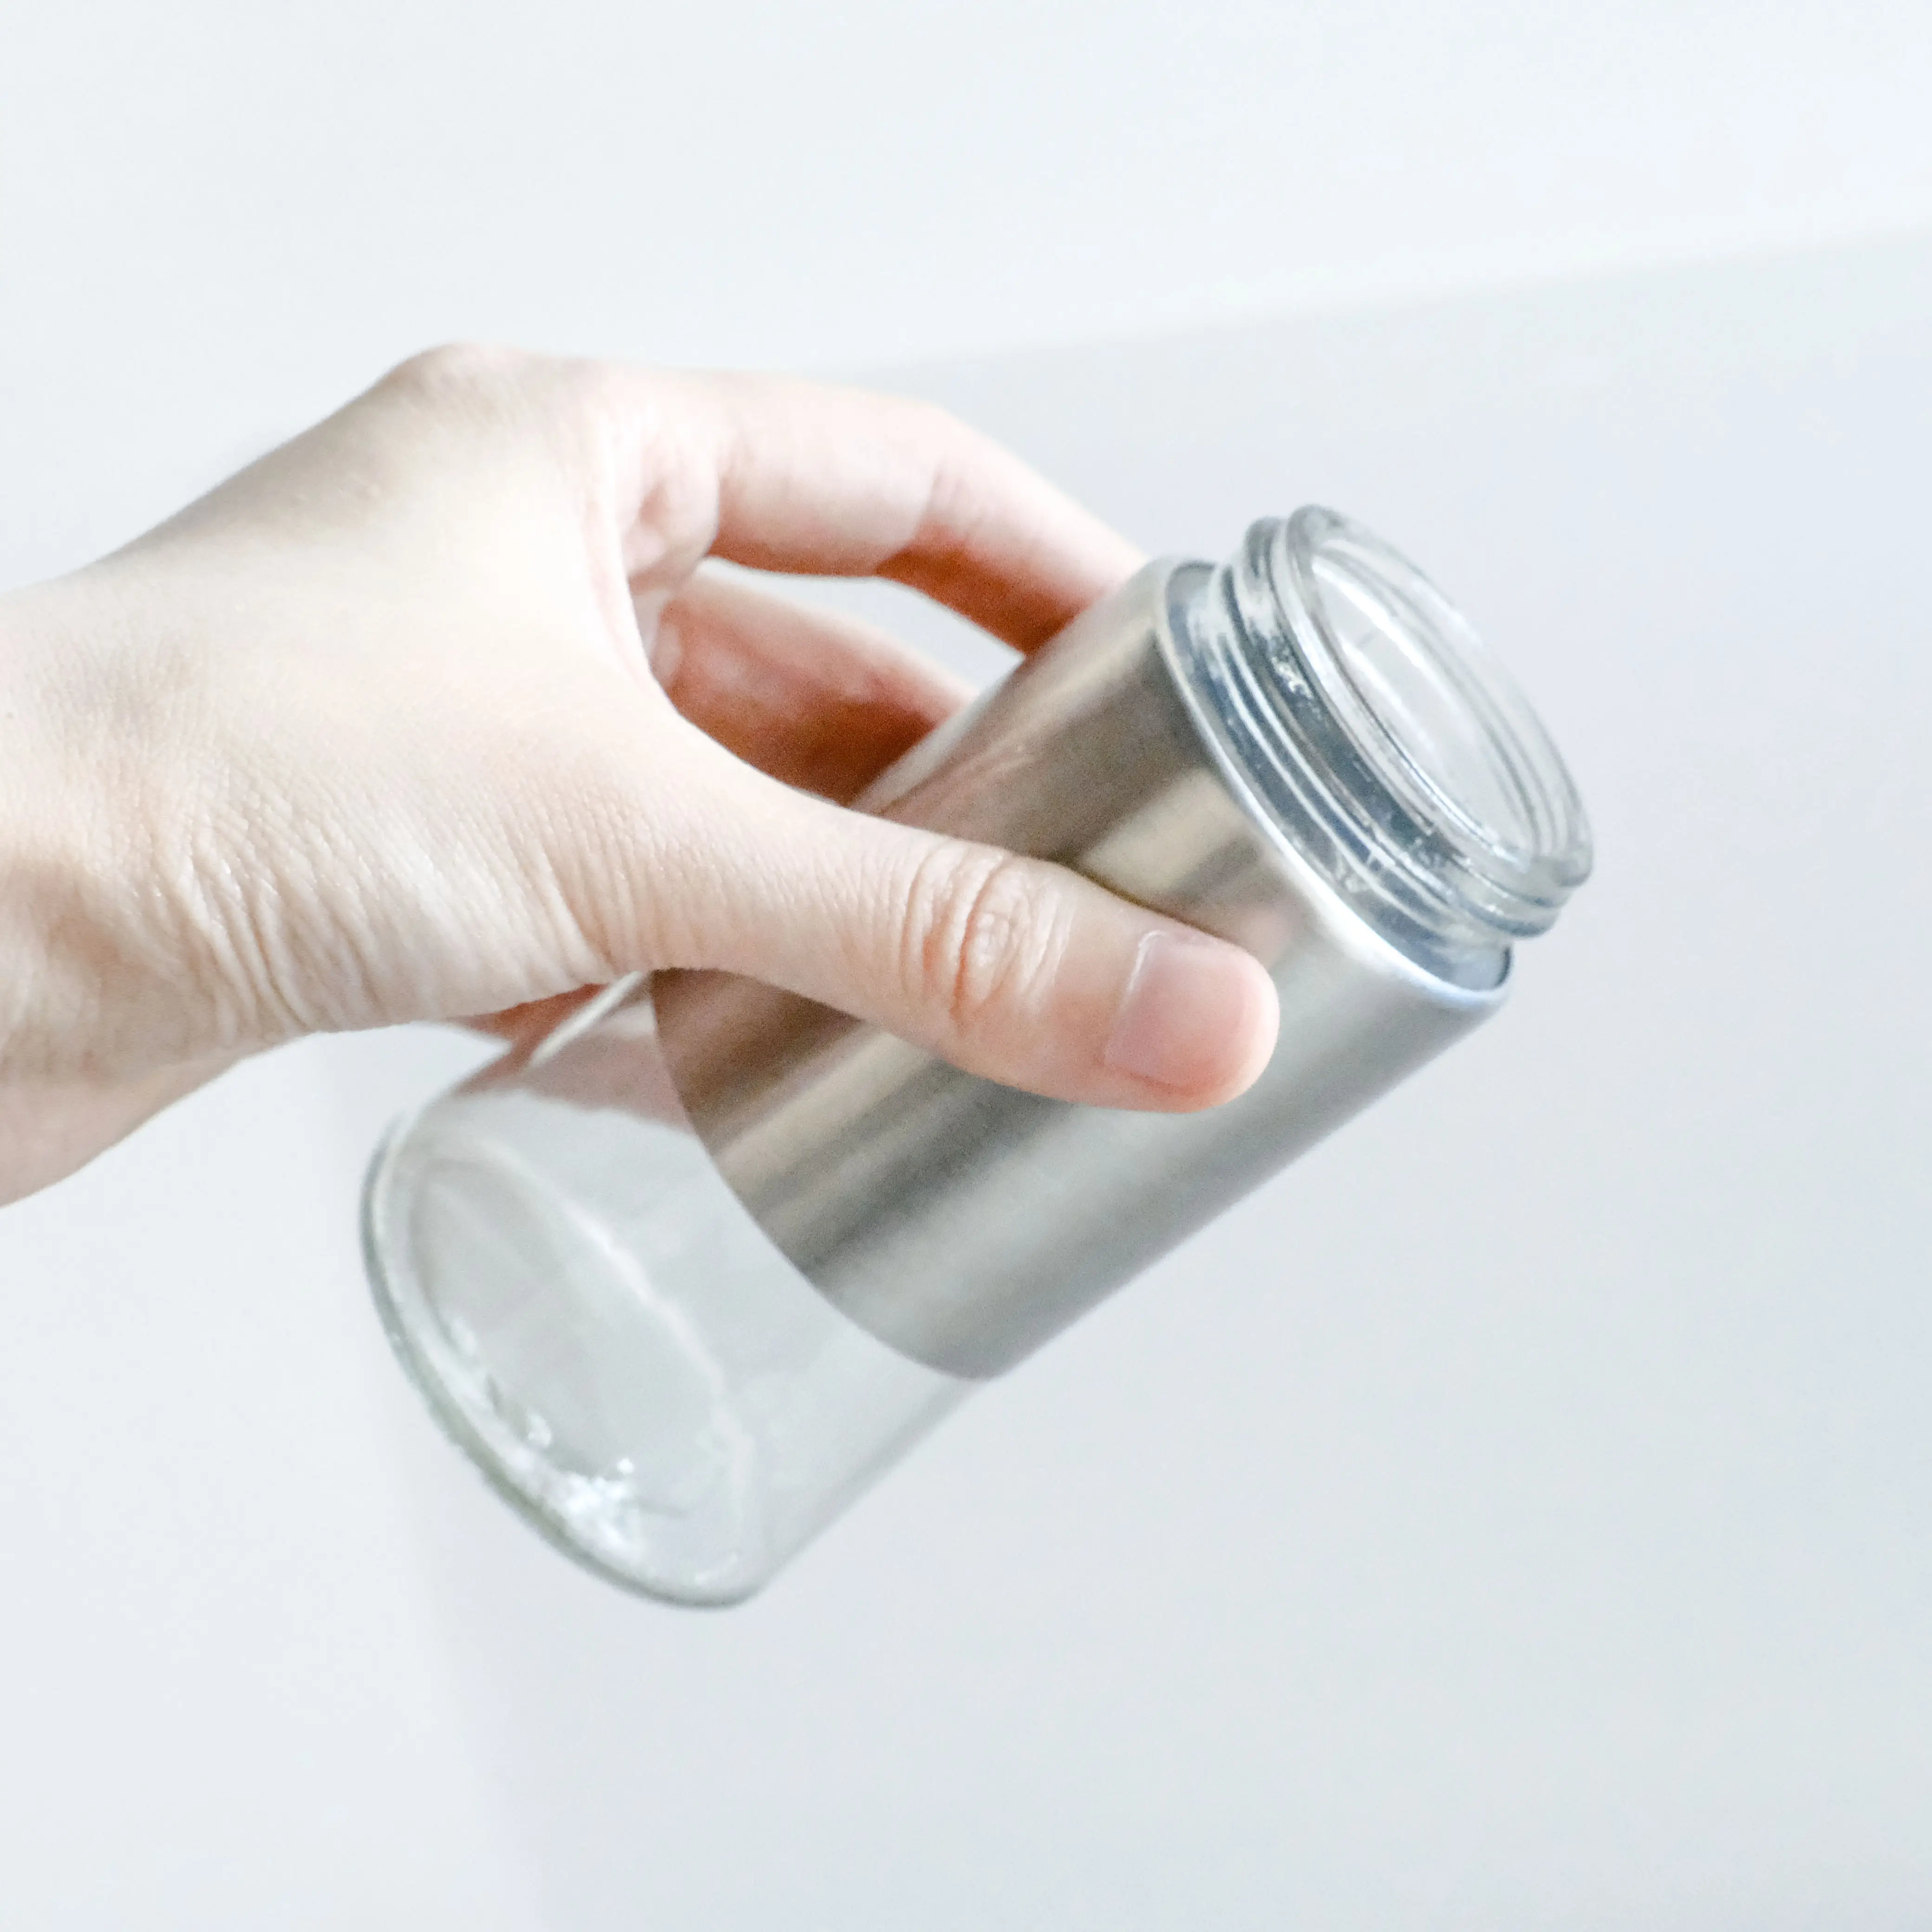 Novo 4 oz aço inoxidável vidro spice jar com etiqueta spice rack gaveta do armário com spice armazenamento garrafa